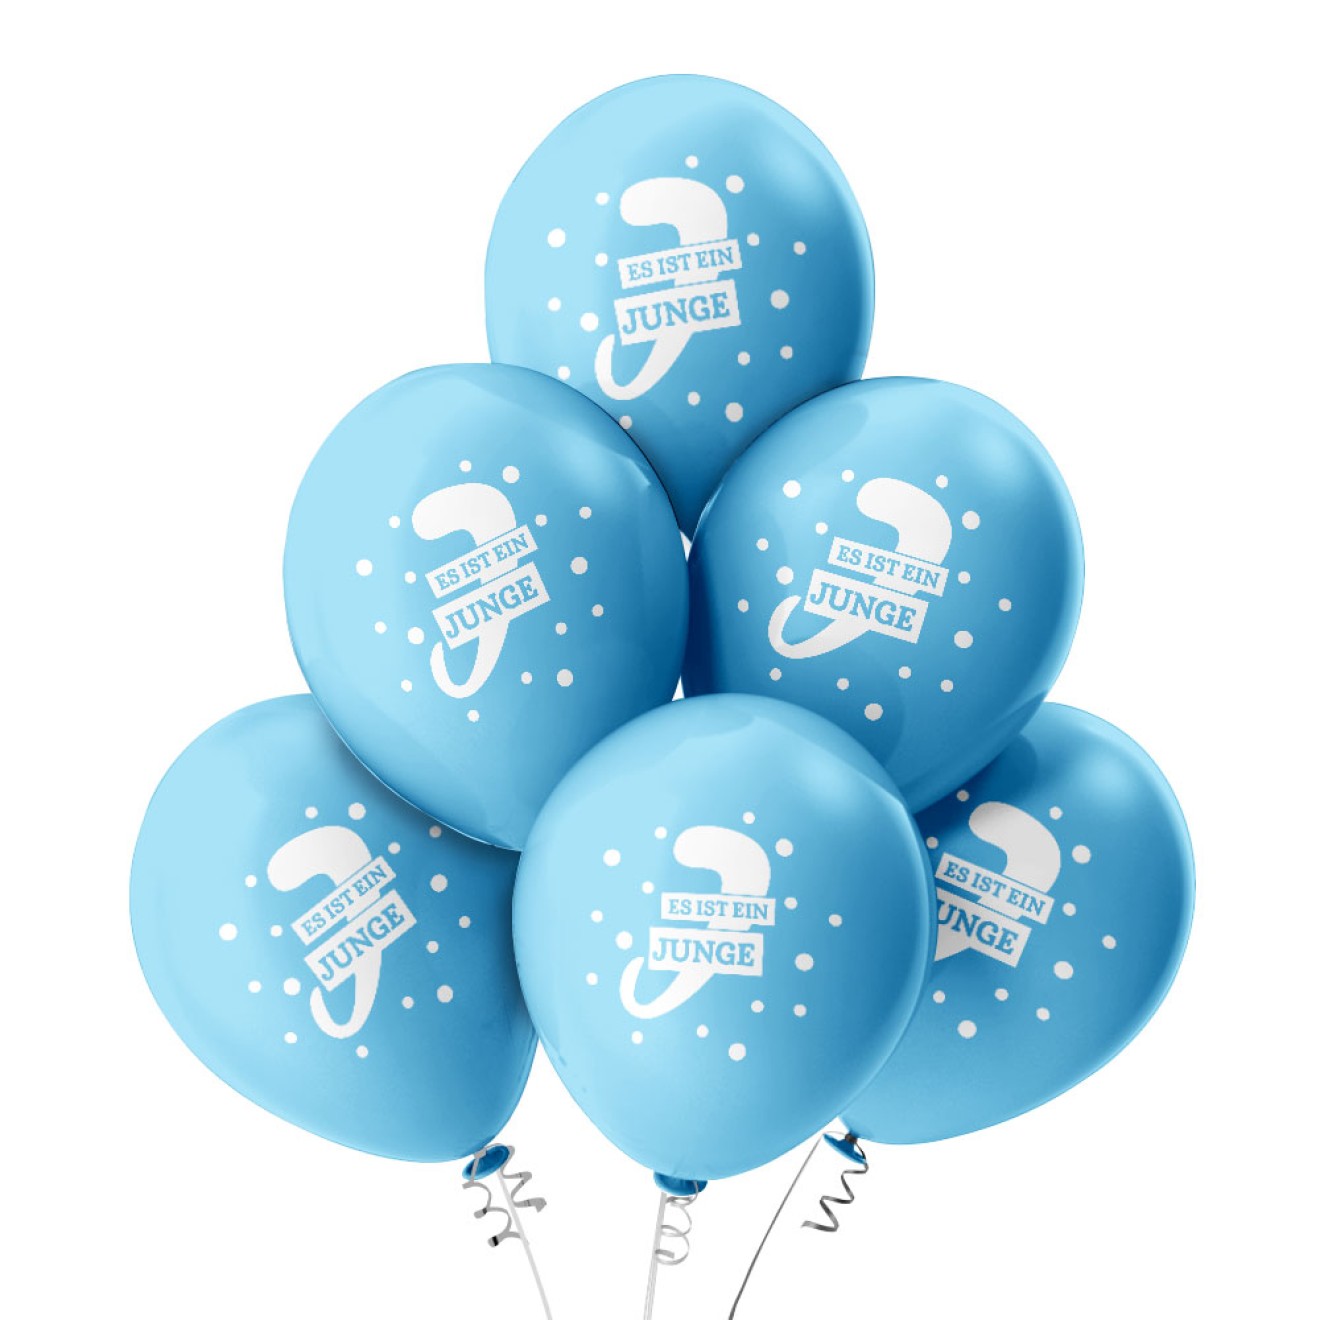 6 Luftballons Es ist ein Junge! - Freie Farbauswahl